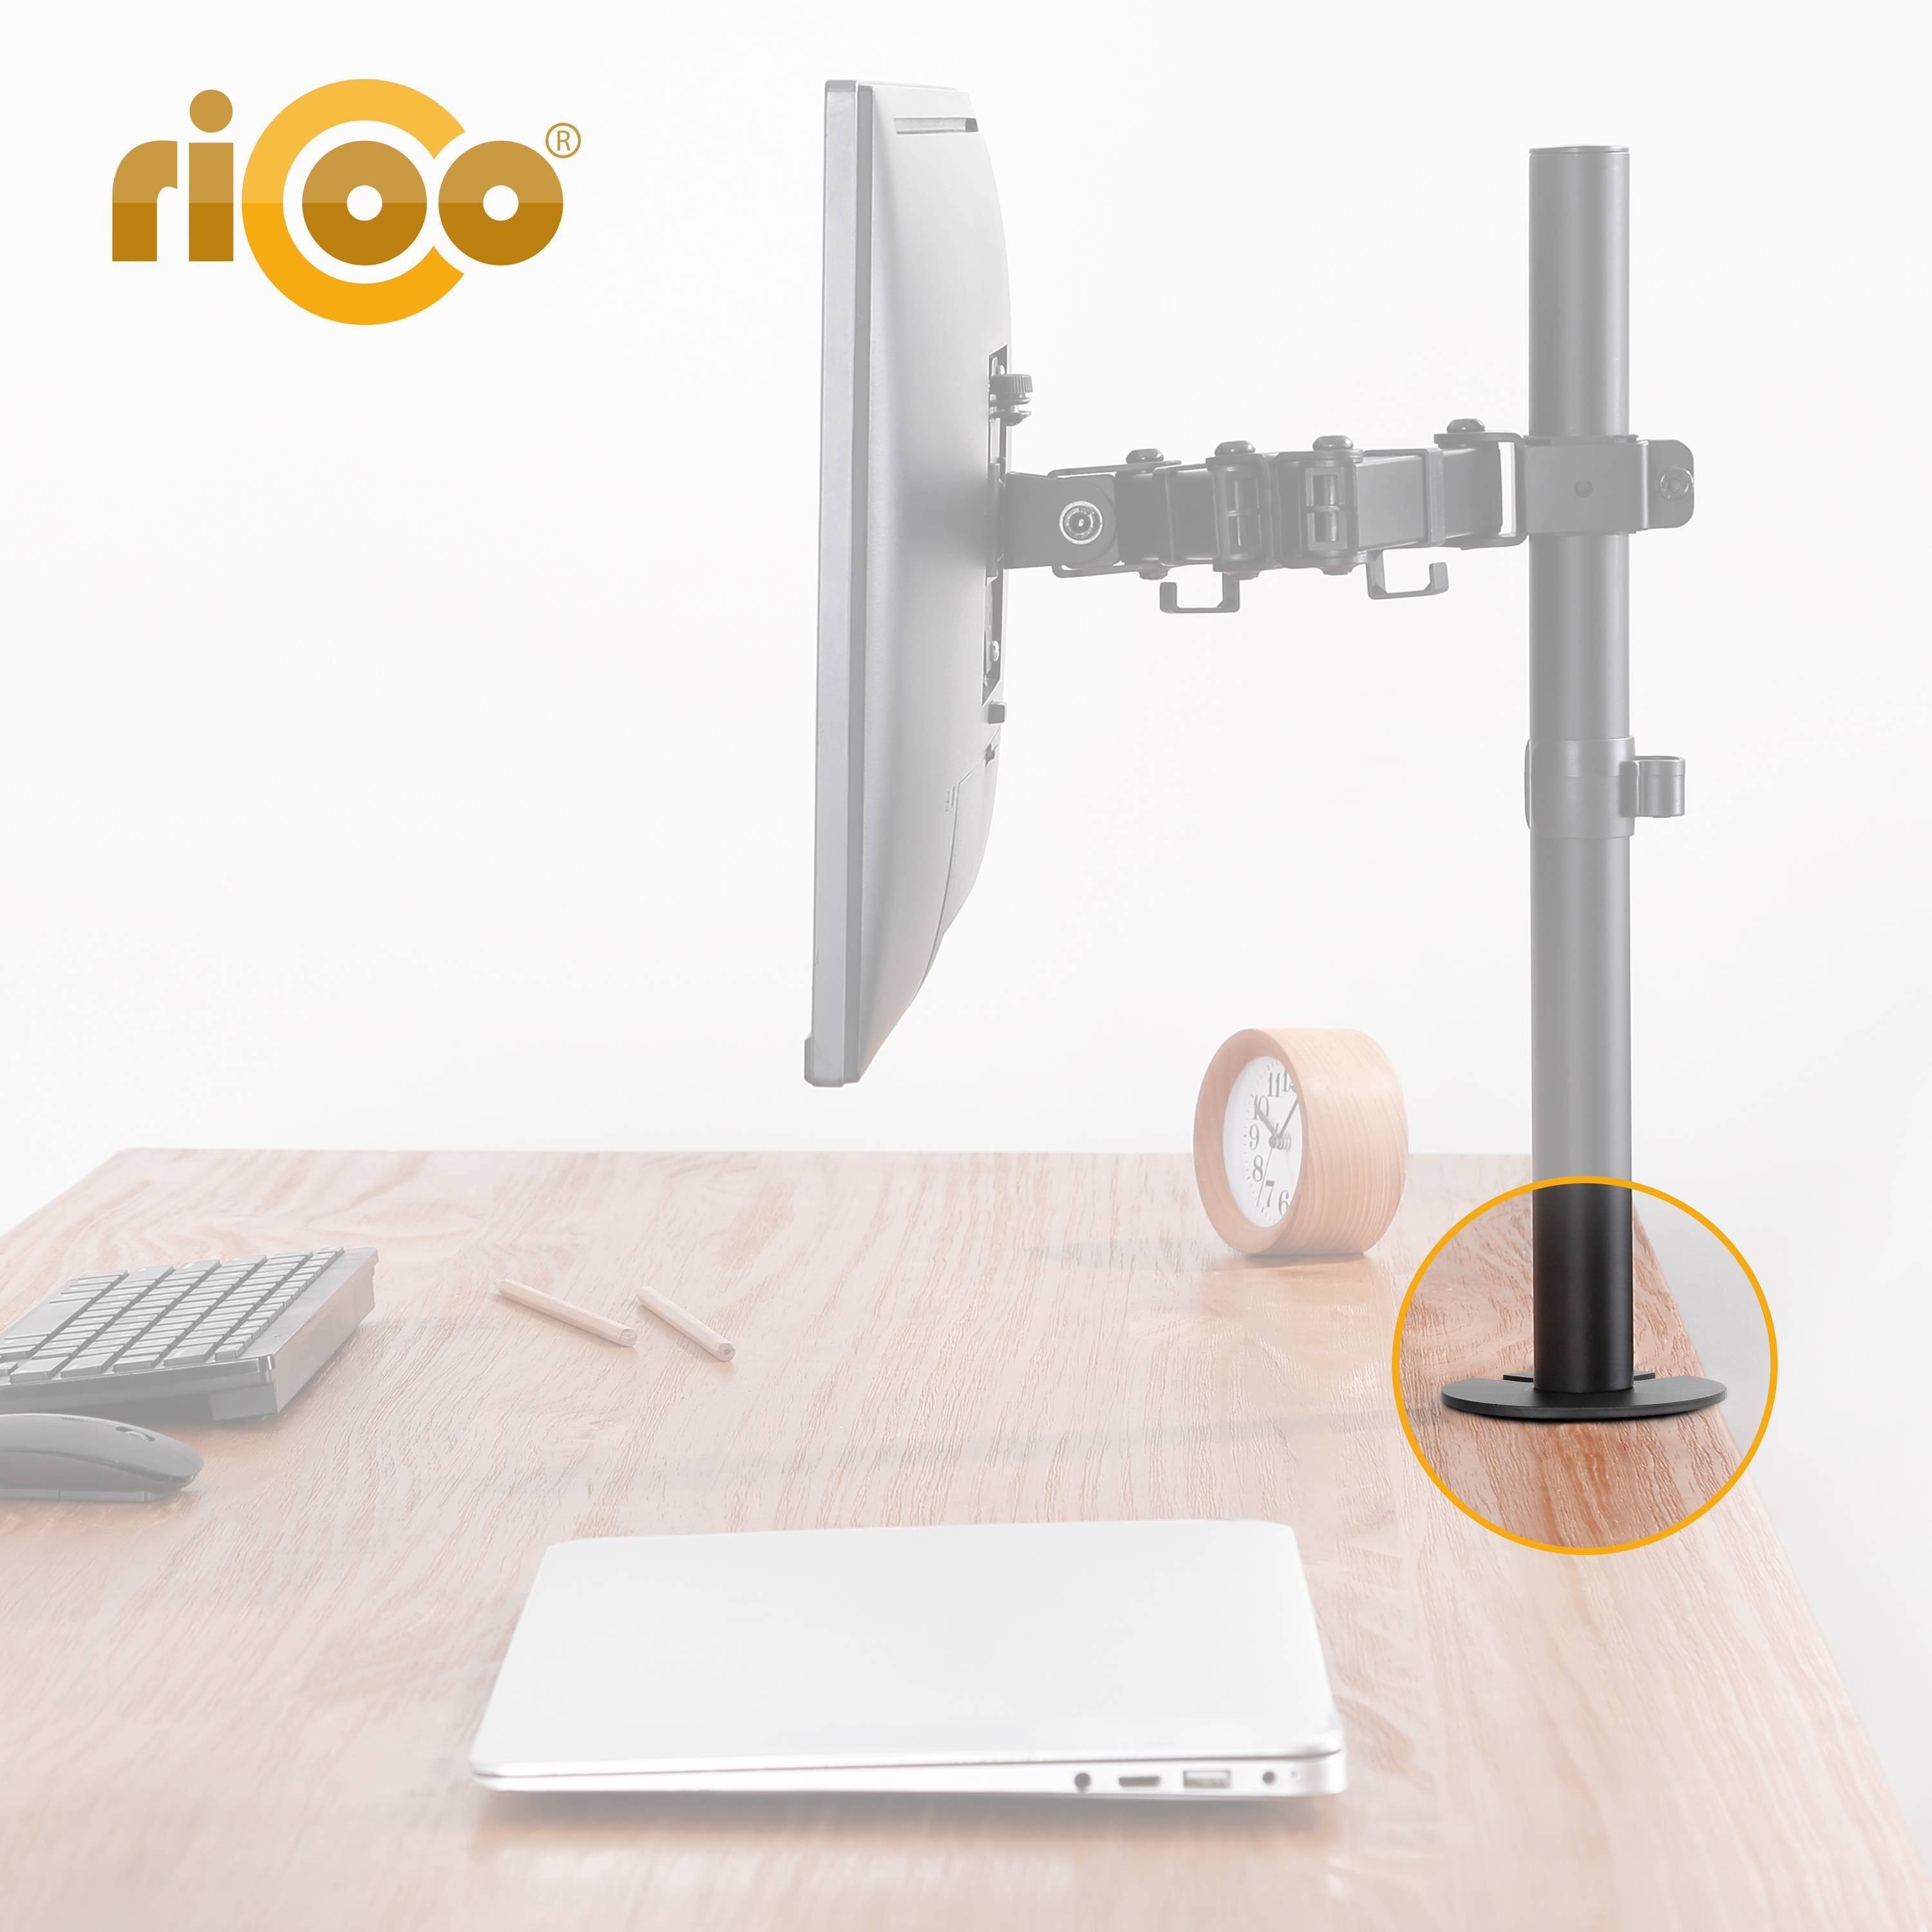 RICOO Z5811 Monitor Tischhalterung, silber